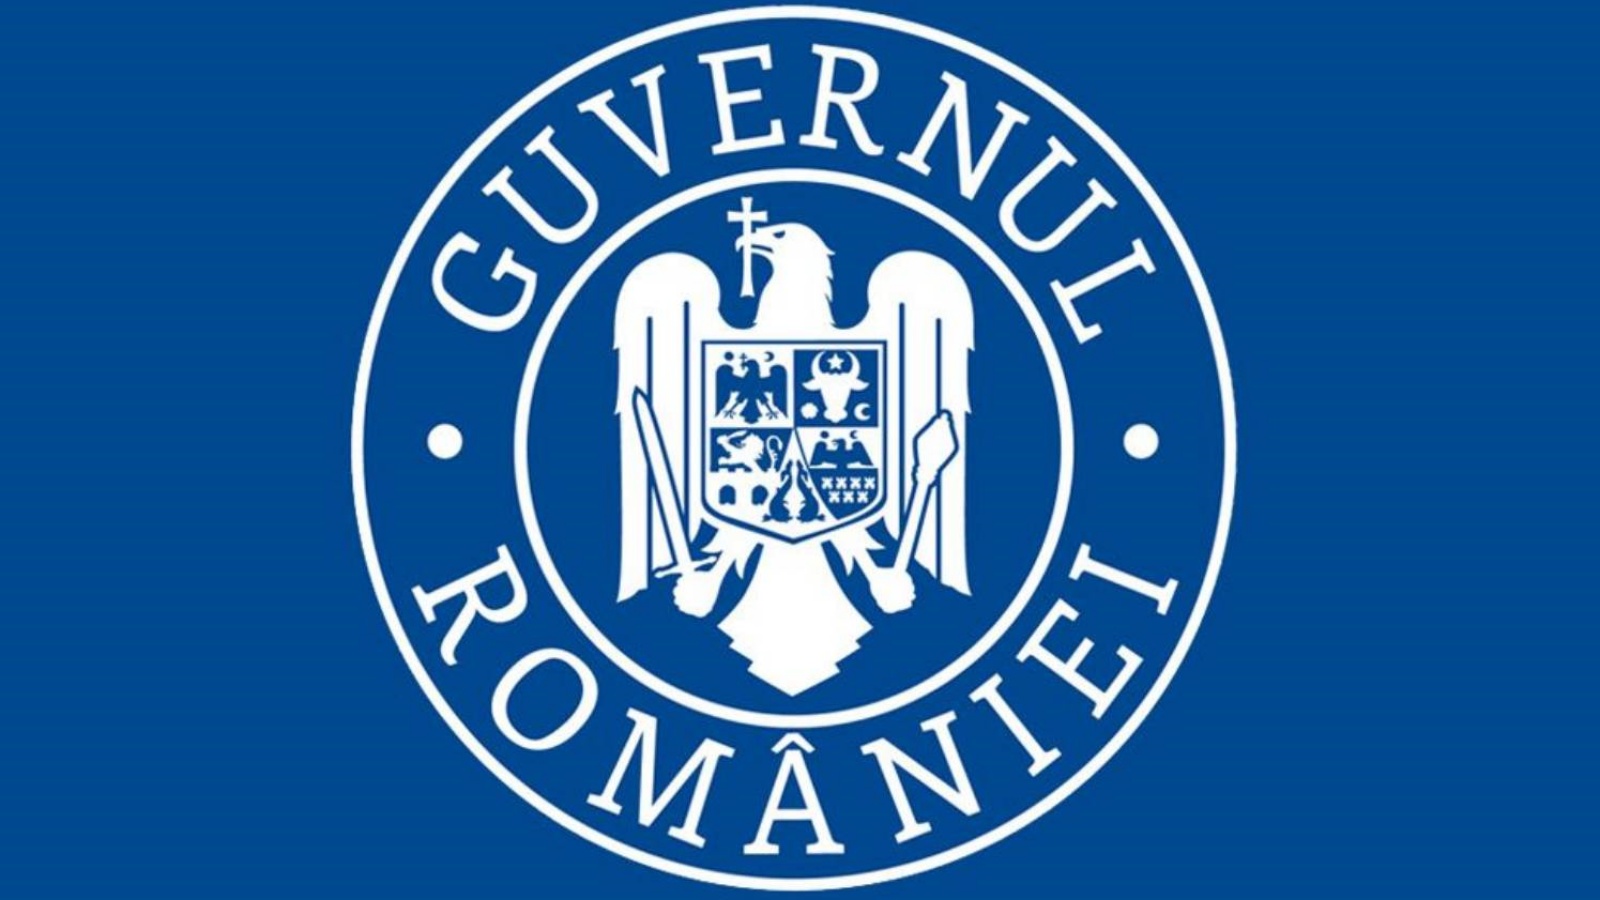 Les tests du gouvernement roumain sans accord ont favorisé les vaccinations obligatoires